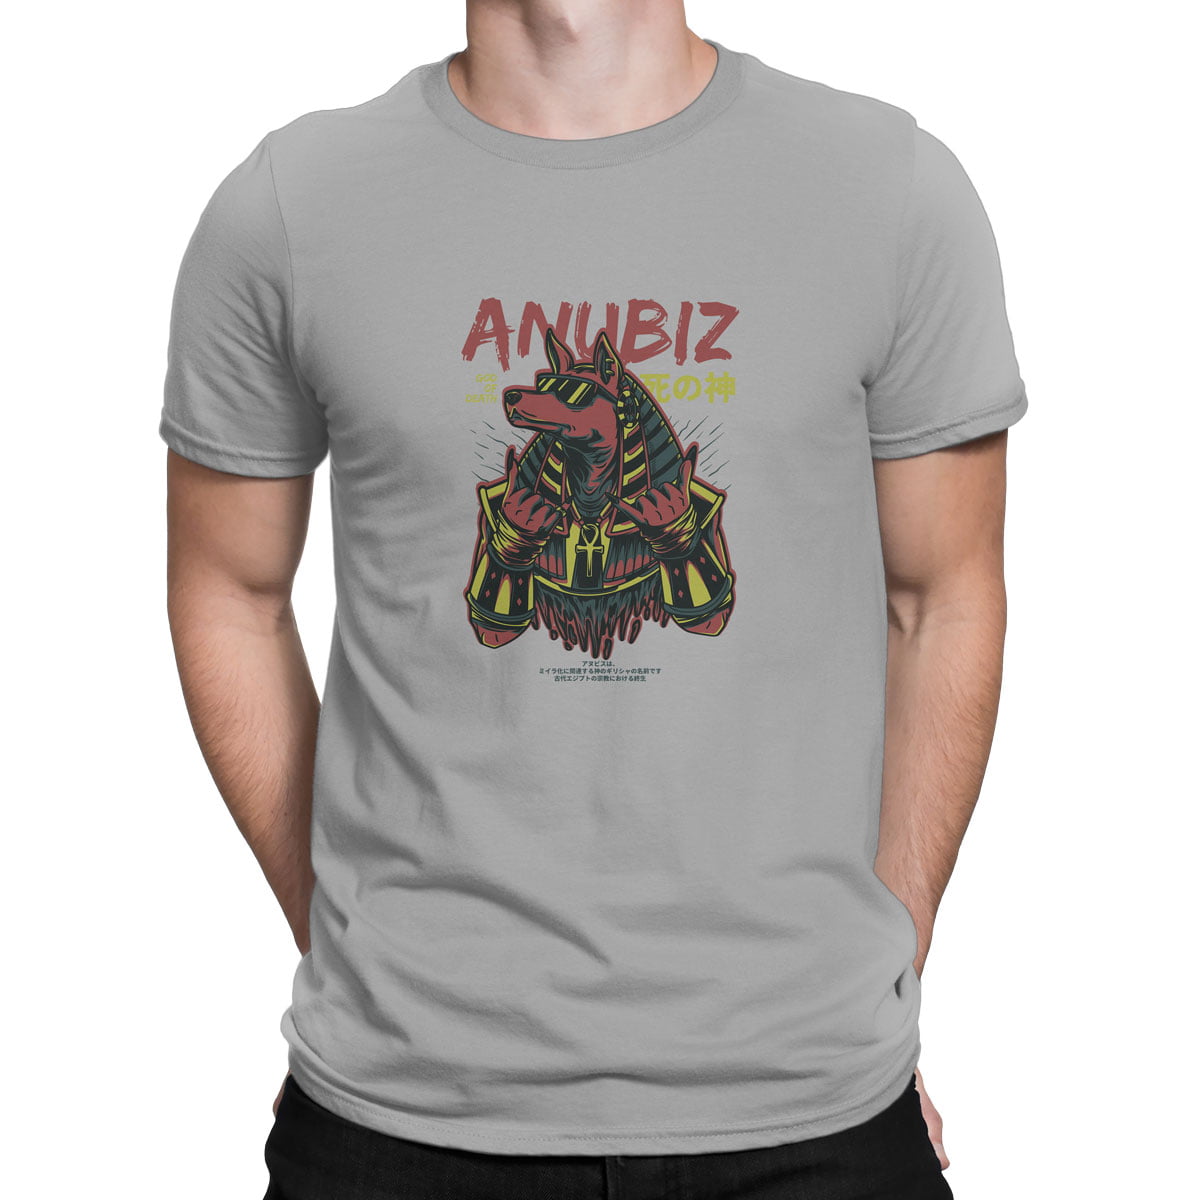 Anubis erkek tisort g - anubis (anubiz) baskılı erkek t-shirt - figurex